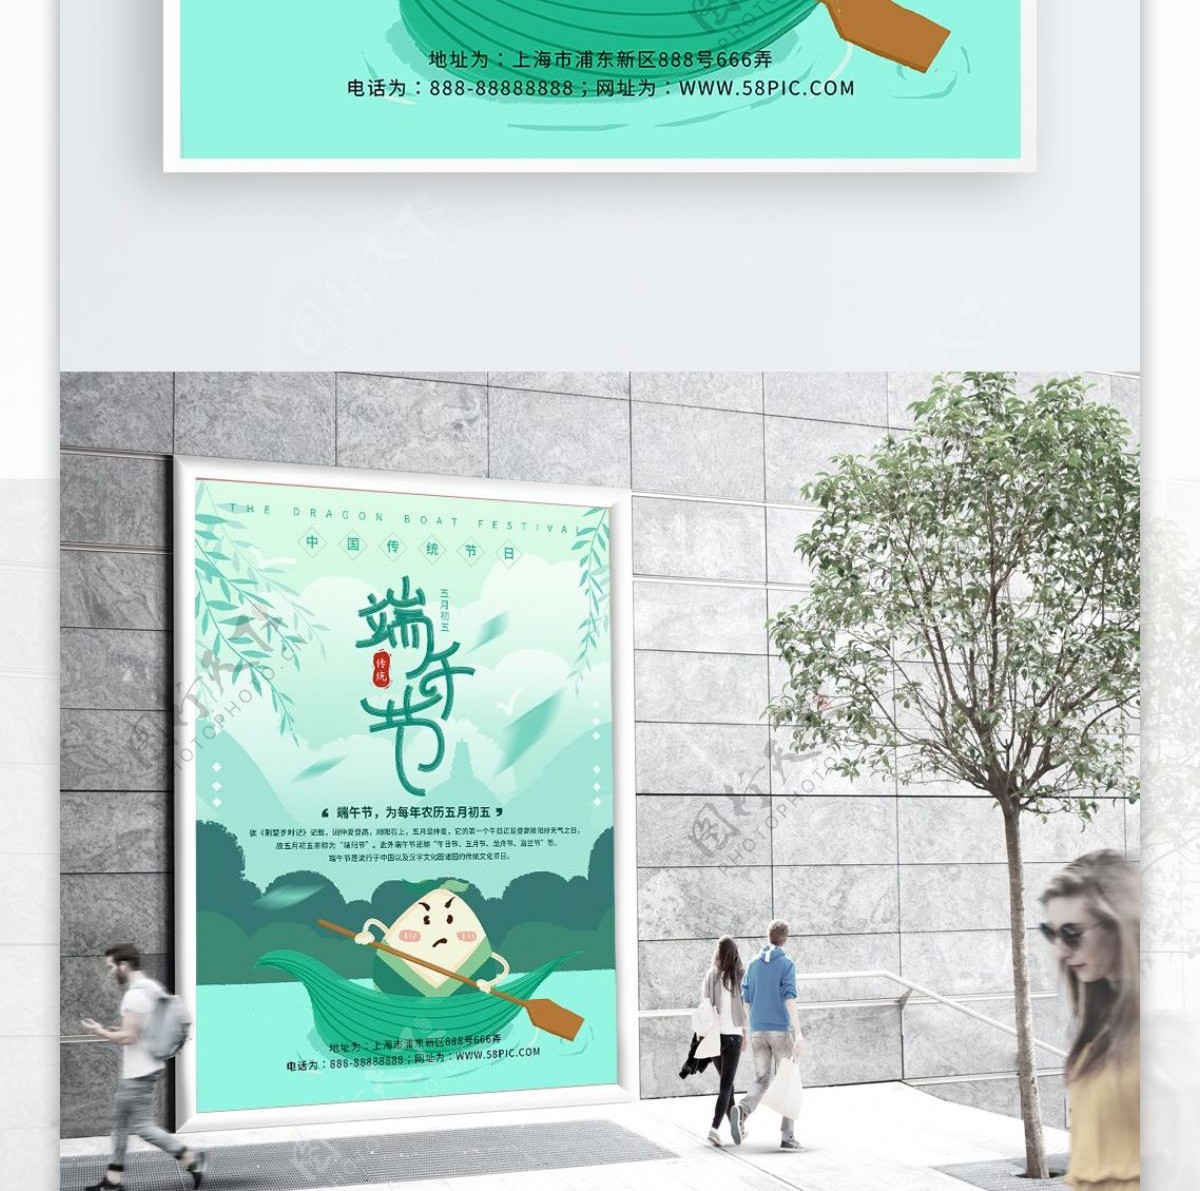 原创清新绿色手绘传统节日端午节海报psd